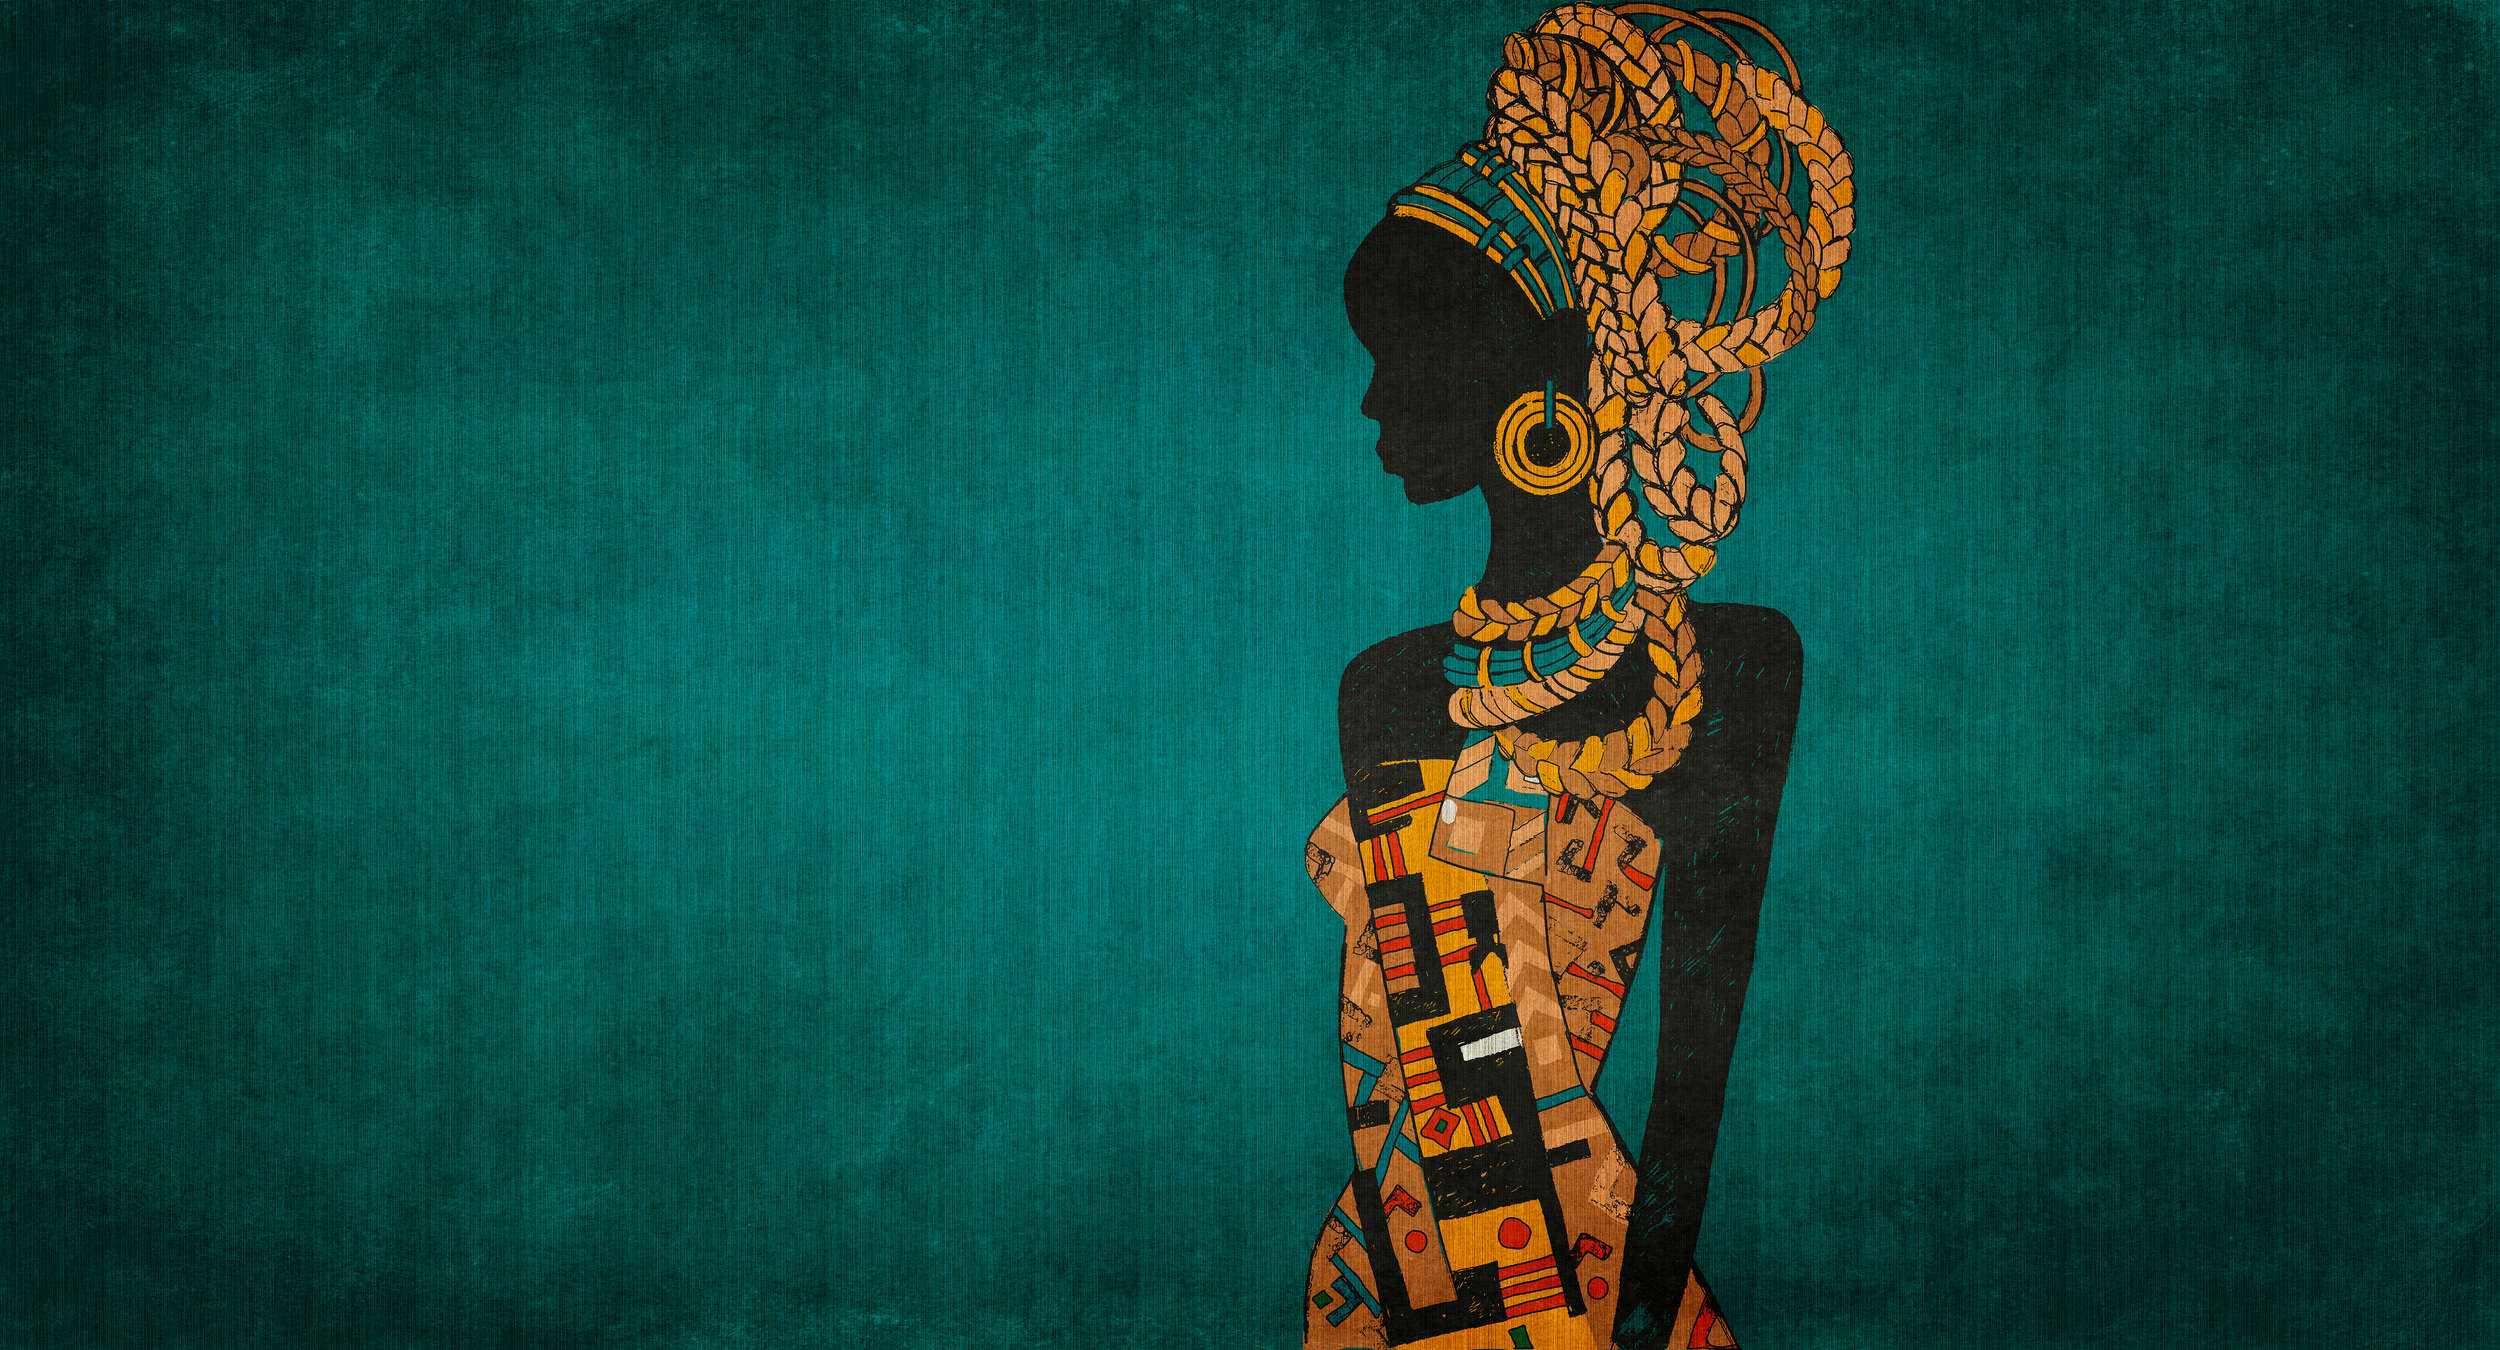             Nairobi 2 - Papel pintado de estilo africano Petrol con Sillouette de mujer
        